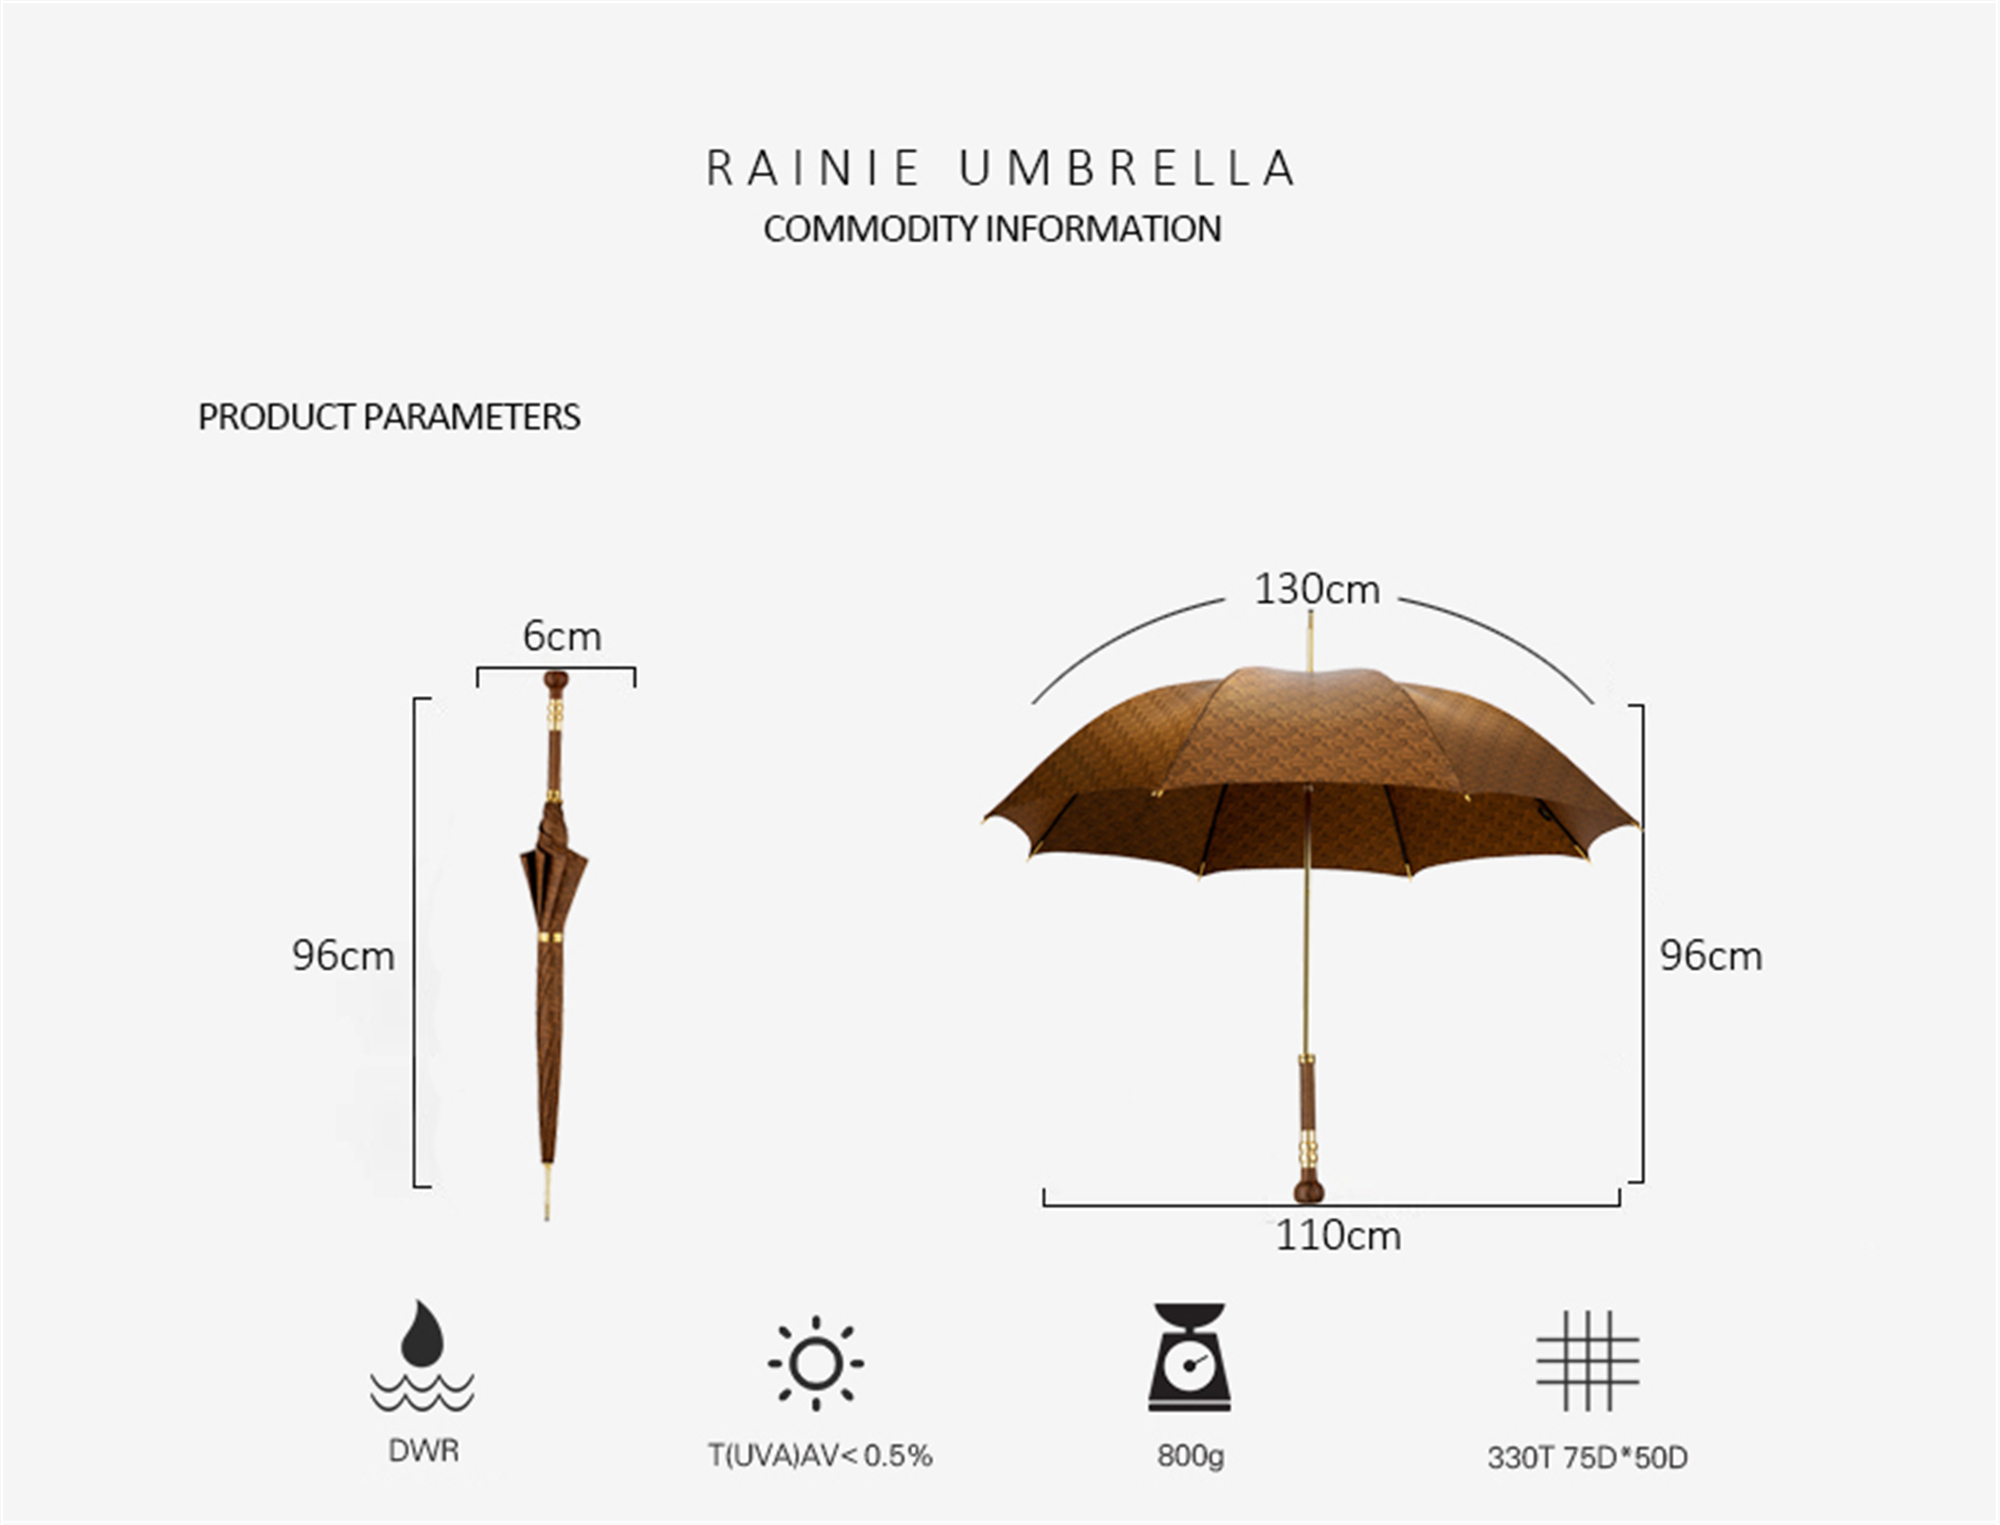 Wood stick umbrella with mushroom head